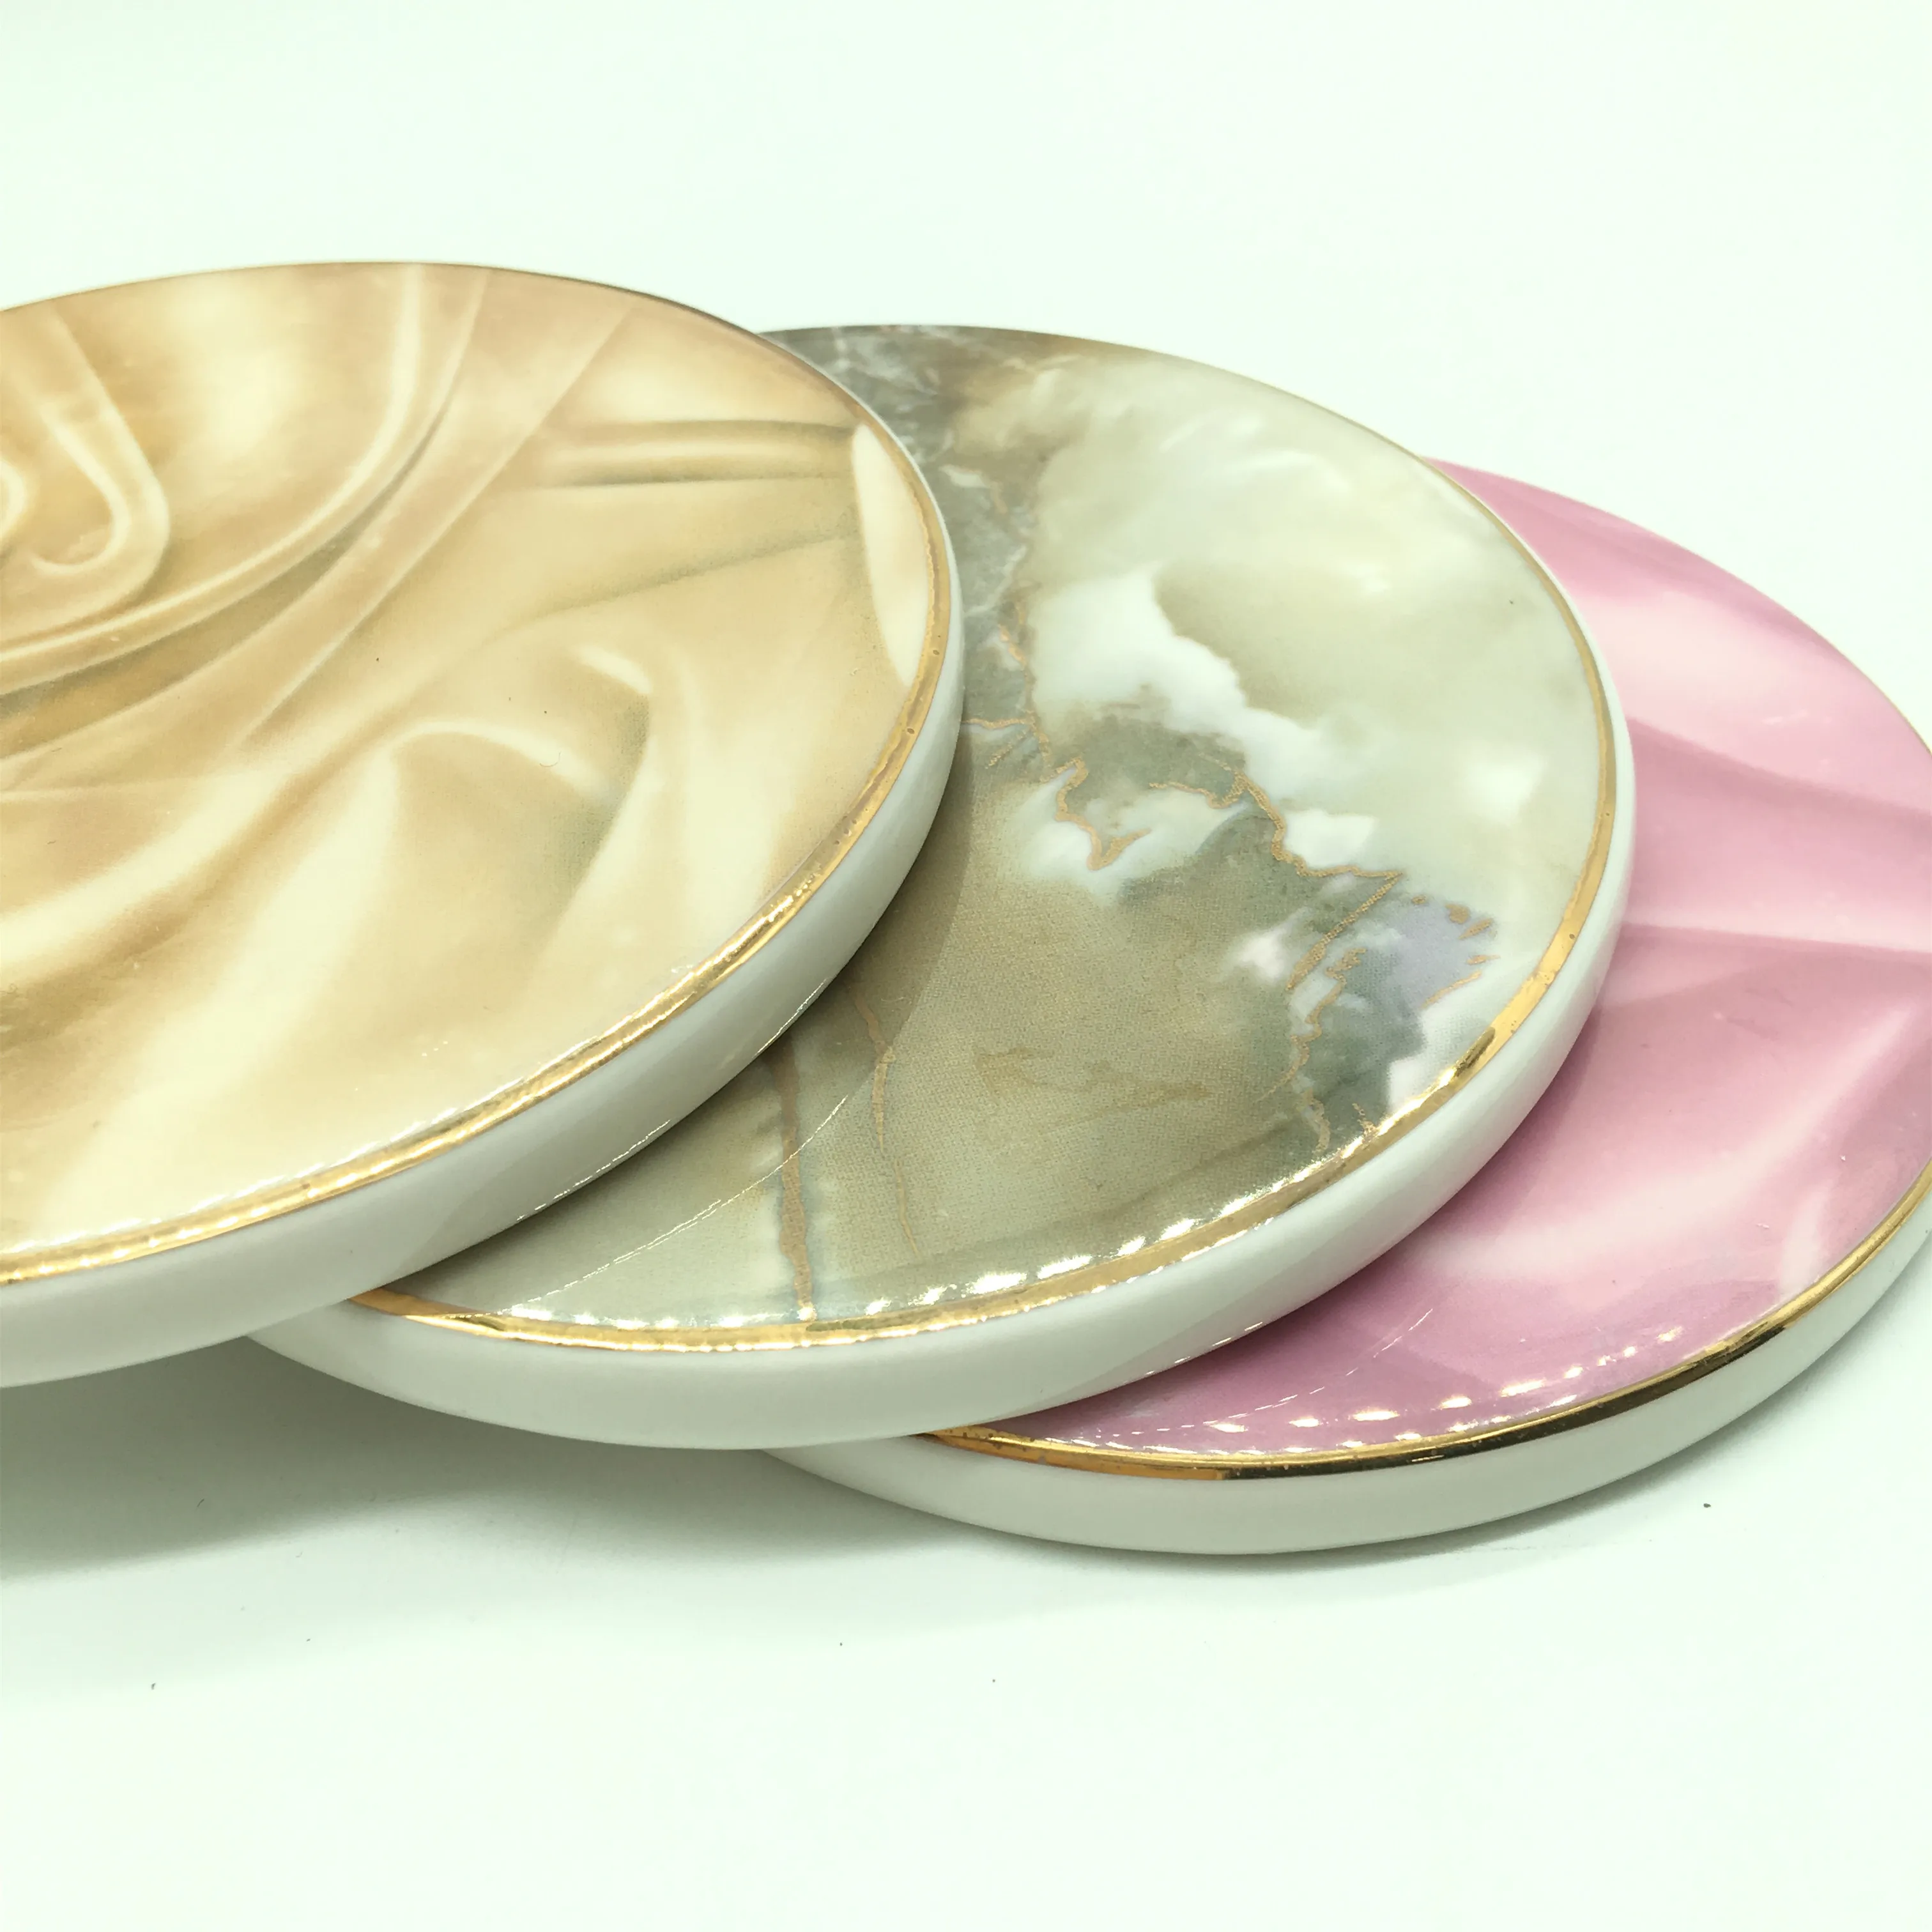 CFen A's камень зерна керамическая подставка для чайной чашки круглый стол коврик подставка для кофейной чашки изолированные подставки 1 шт